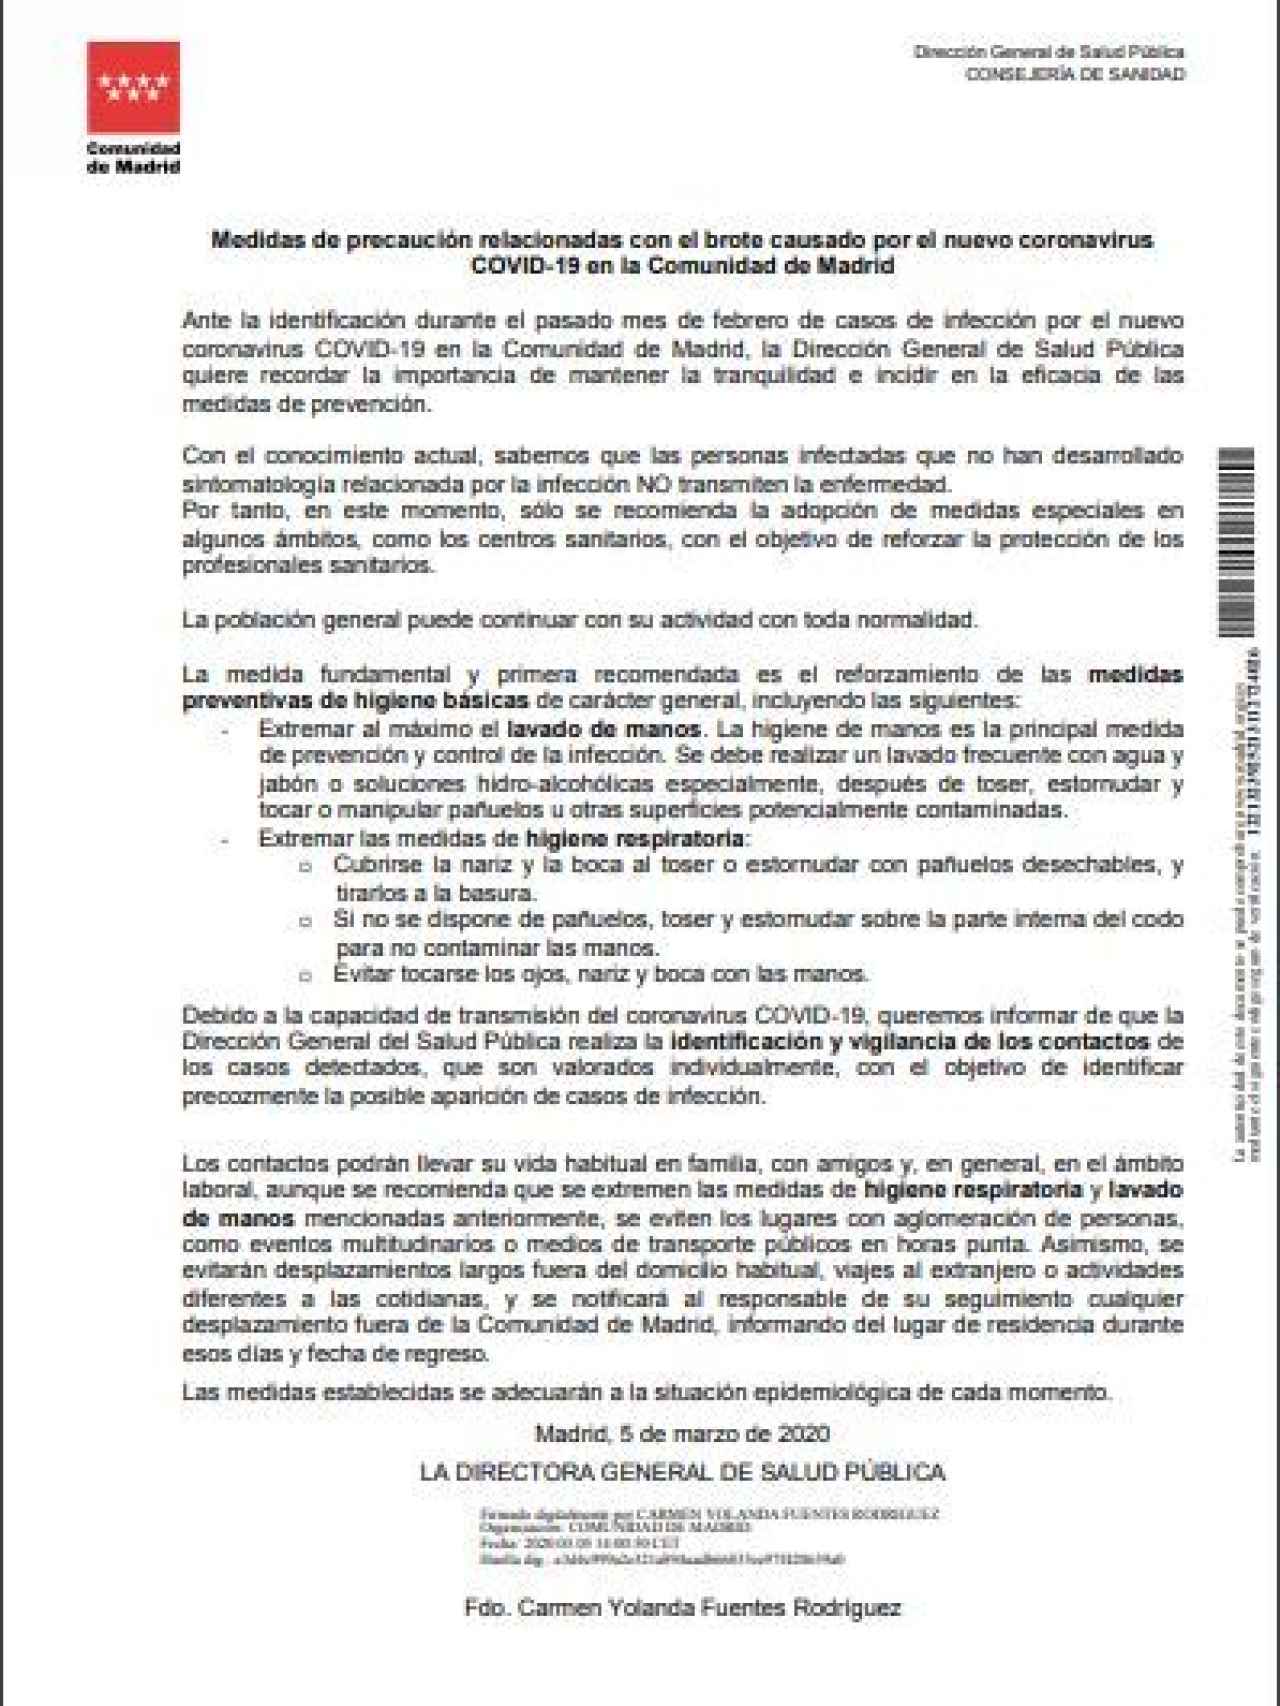 Documento de 5 de marzo de la directora de Salud Pública del Gobierno de Madrid./